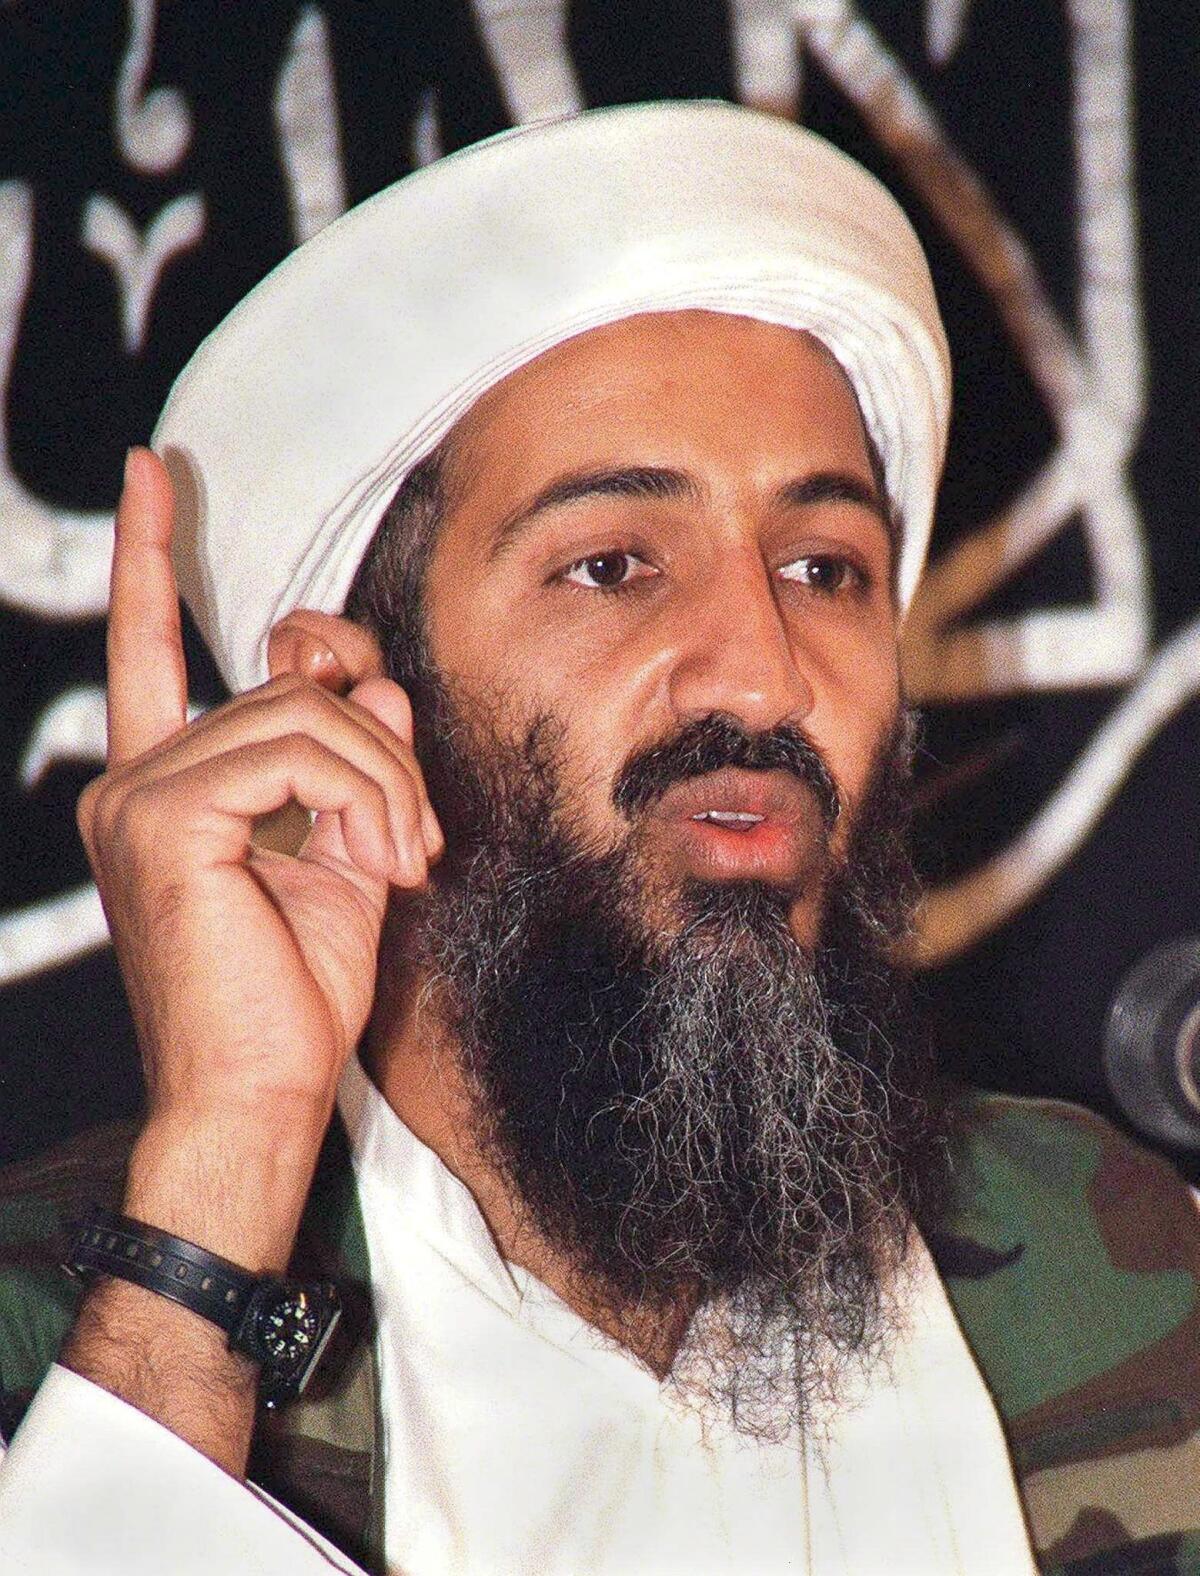 El líder de la organización terrorista Al Qaeda, Osama bin Laden. Fotografía tomada en 1998.